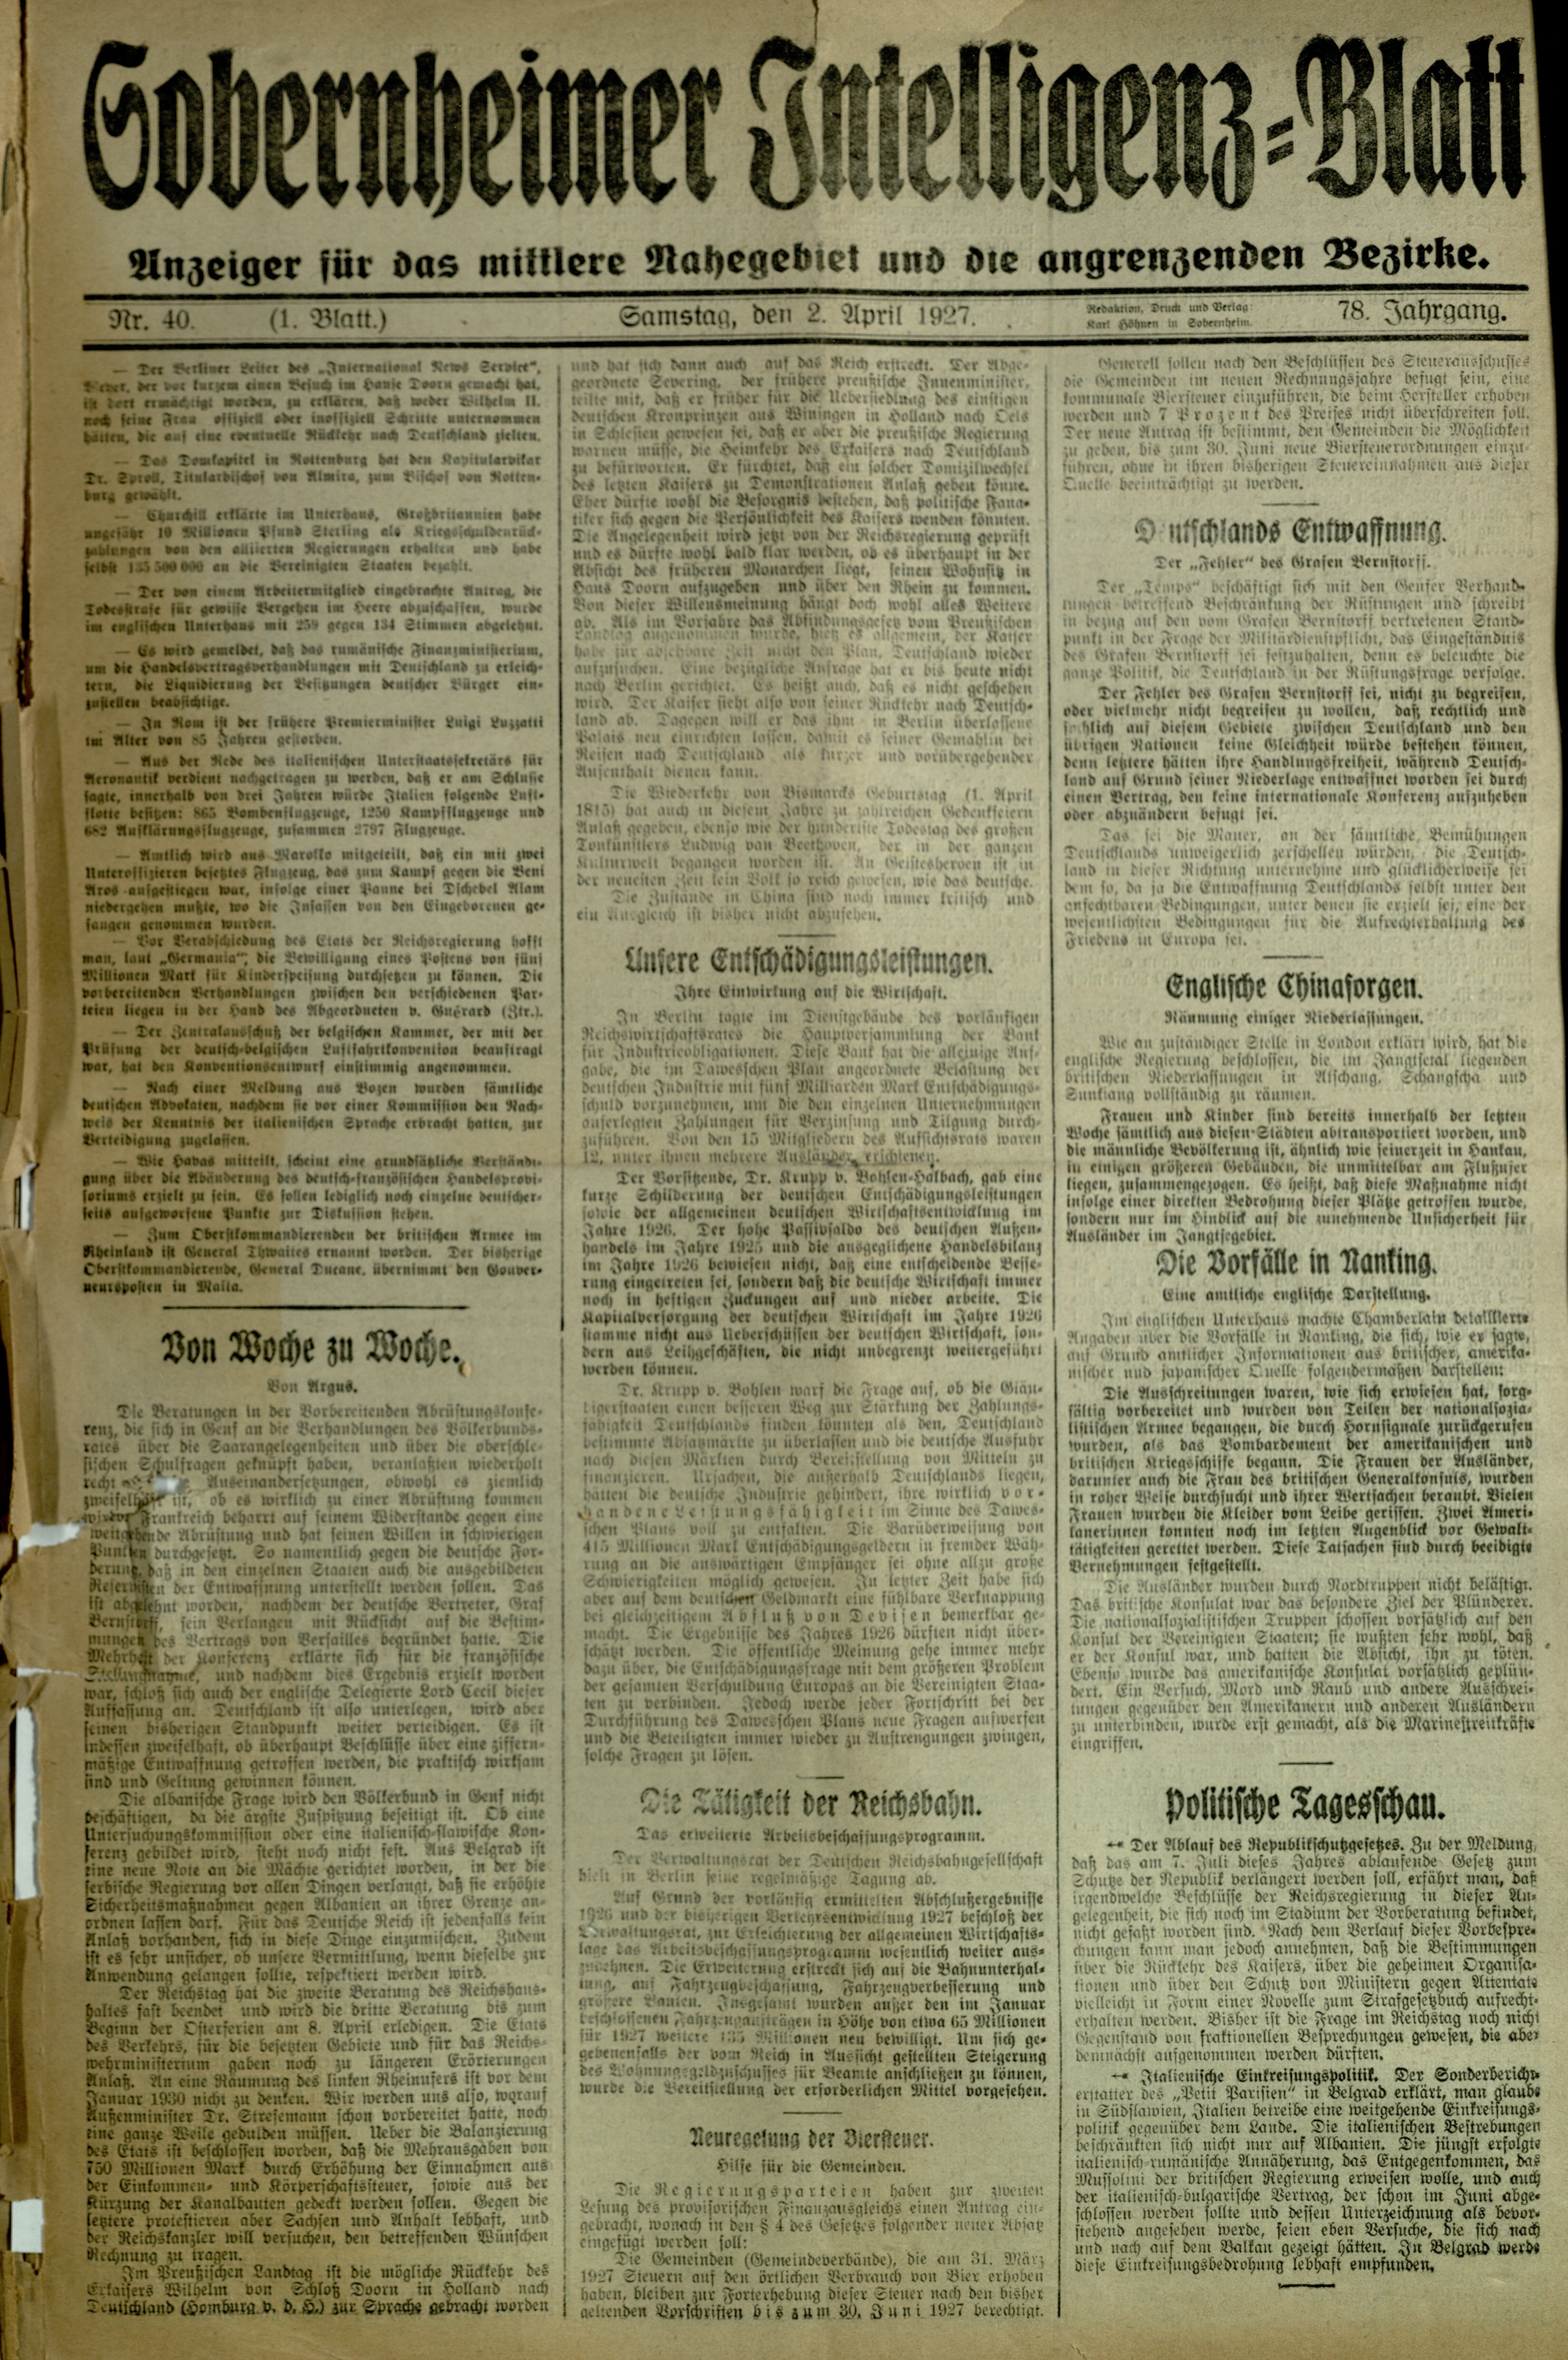 Zeitung: Sobernheimer Intelligenzblatt; April 1926, Jg. 78 Nr. 40 (Heimatmuseum Bad Sobernheim CC BY-NC-SA)